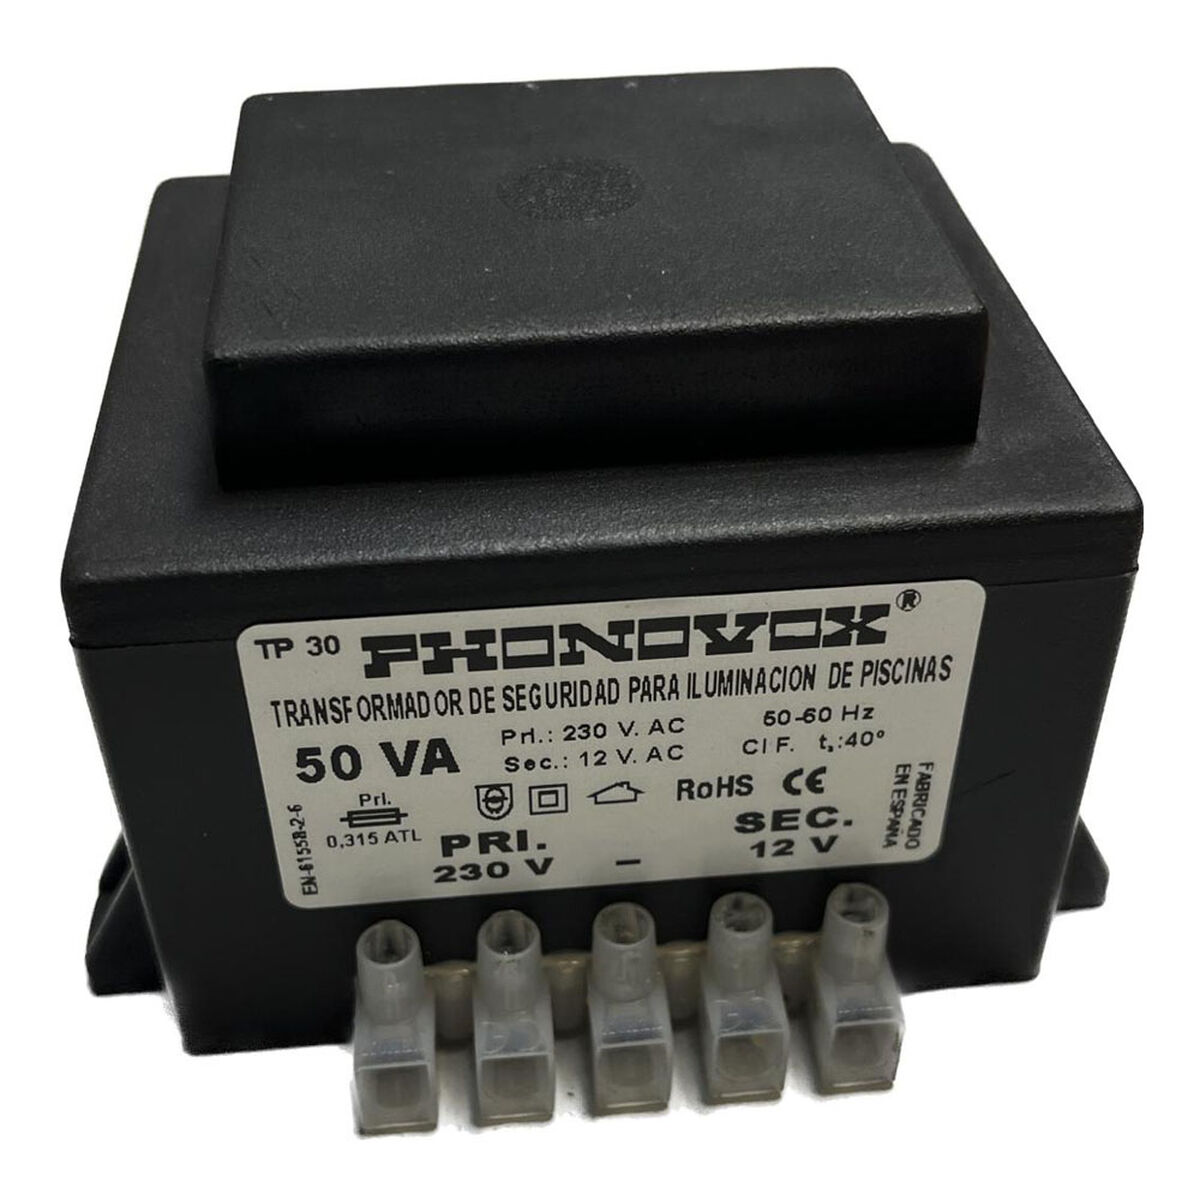 Transformateur de sécurité pour l'éclairage des piscines PHONOVOX tp31050 50 VA 12 V 230 V 50-60 Hz 9,8 x 7,9 x 6,4 cm